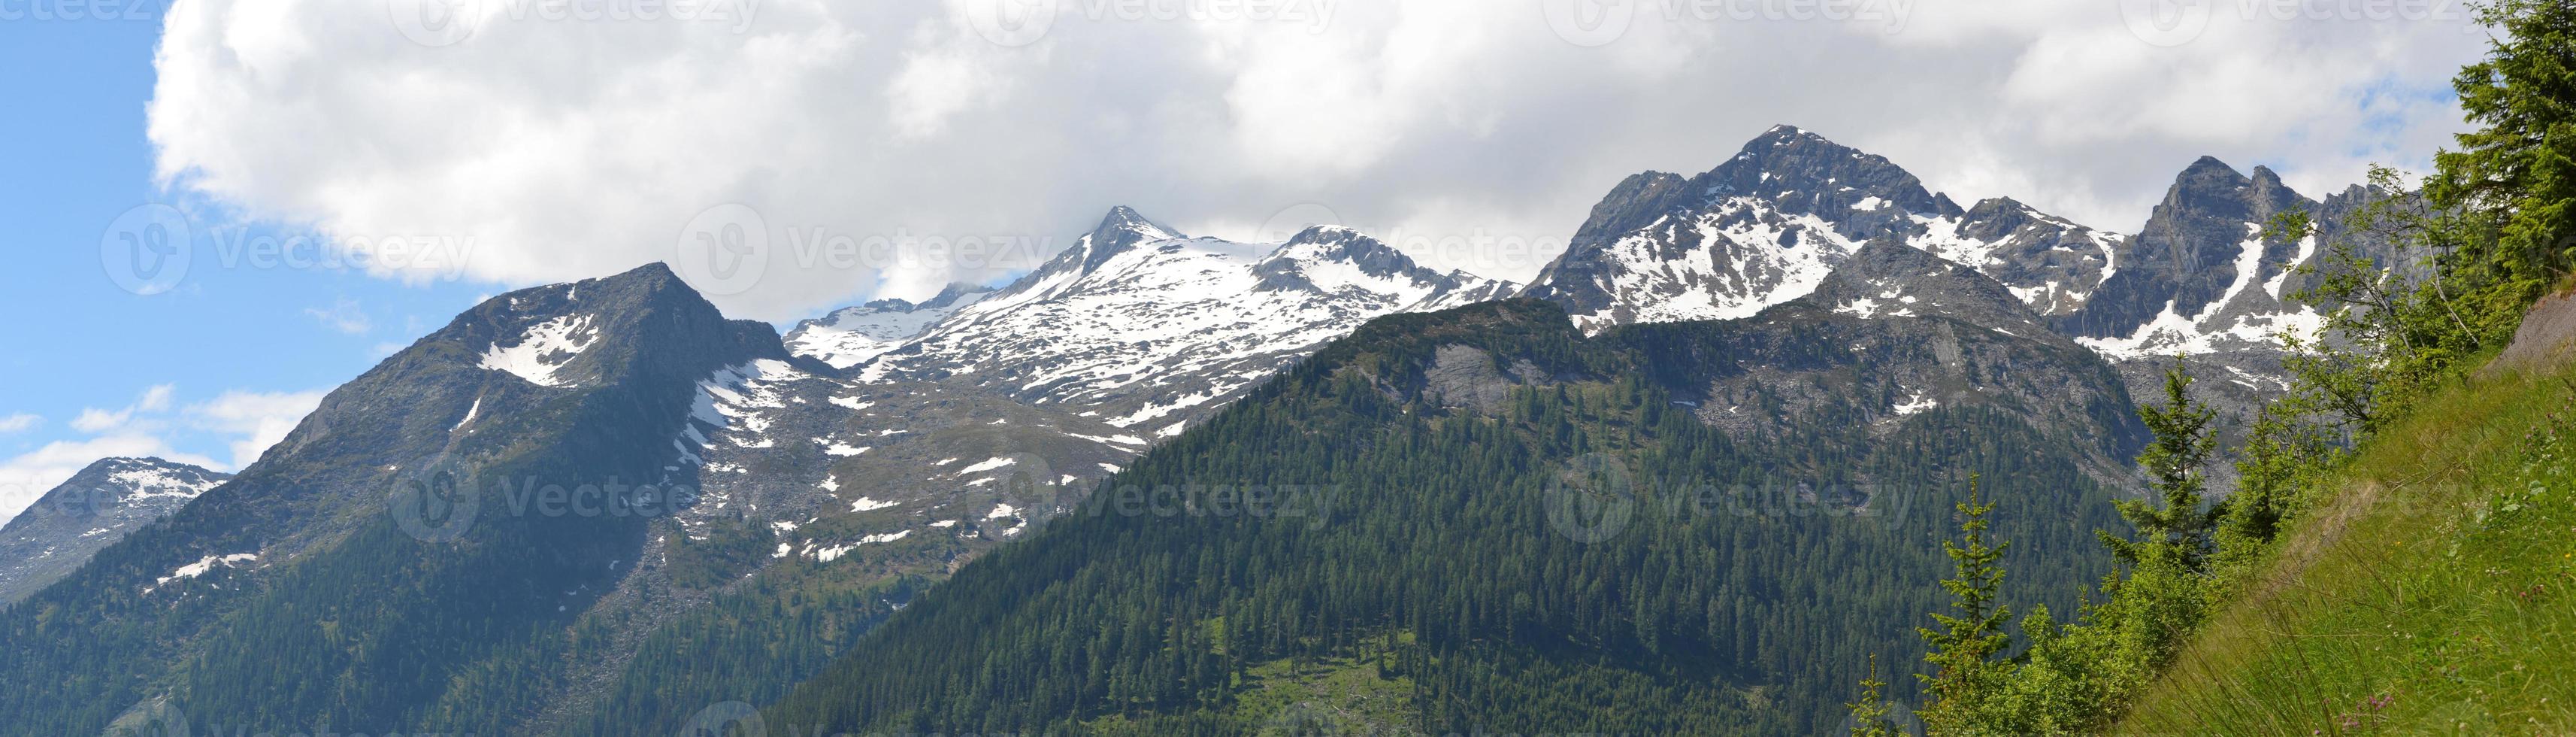 sneeuw Aan pieken van Alpen bergen in Oostenrijk - panorama foto